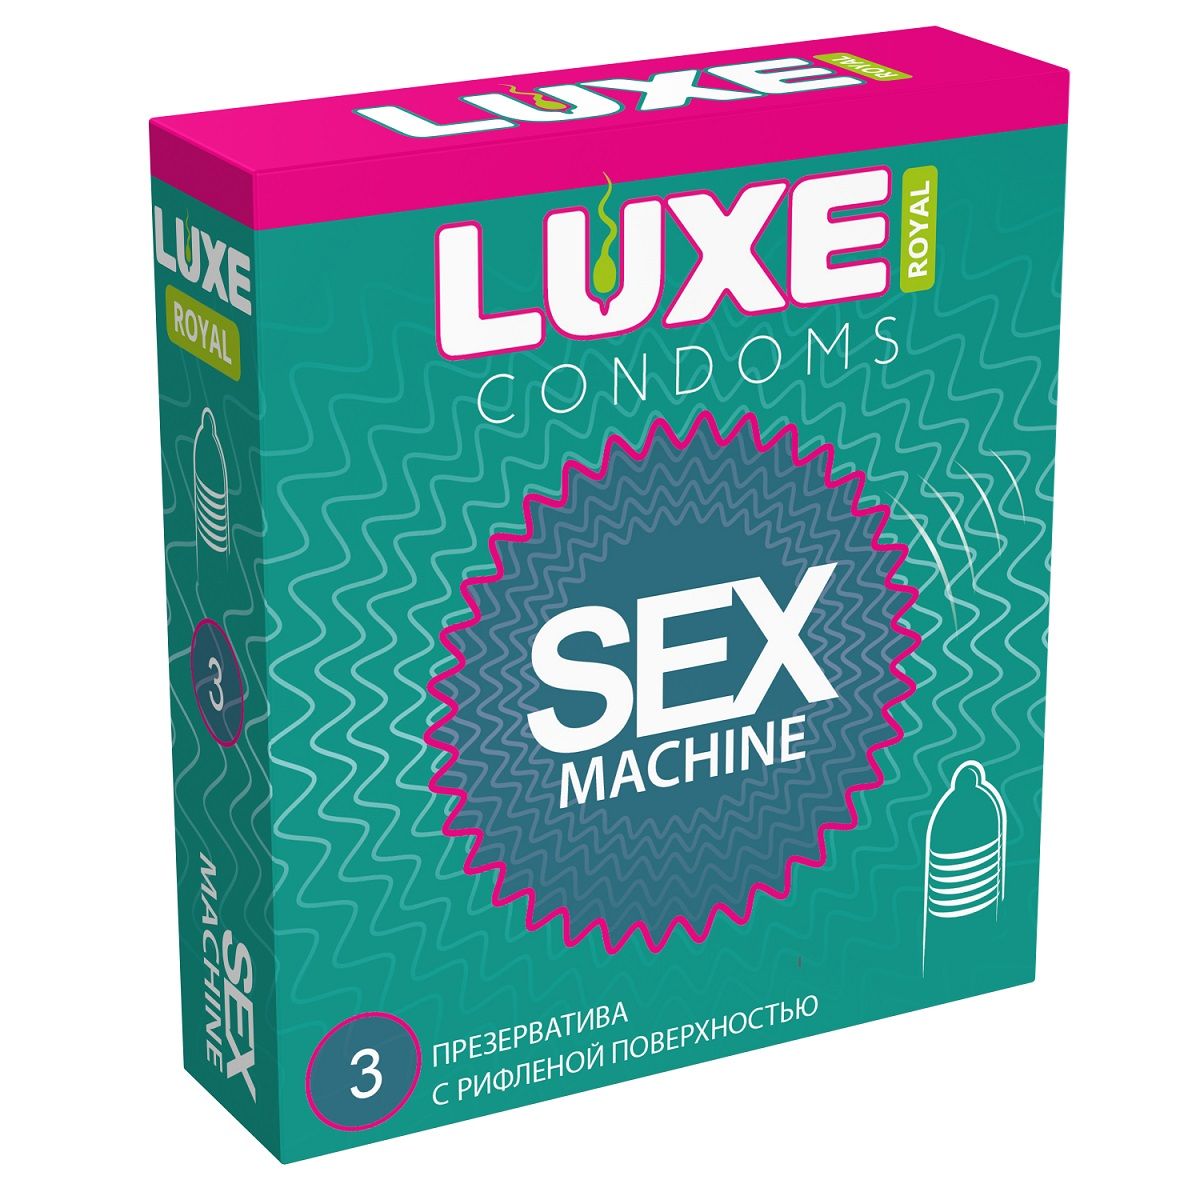 Высококачественные текстурированные презервативы. Максимальное разнообразие и новые ощущения в ваших отношениях. В фирменной упаковке содержится 3 презерватива из тонкого латекса с ребрышками. Ширина - 52 мм.<br> Толщина стенок - 0,06 мм.<br> В упаковке - 3 шт.